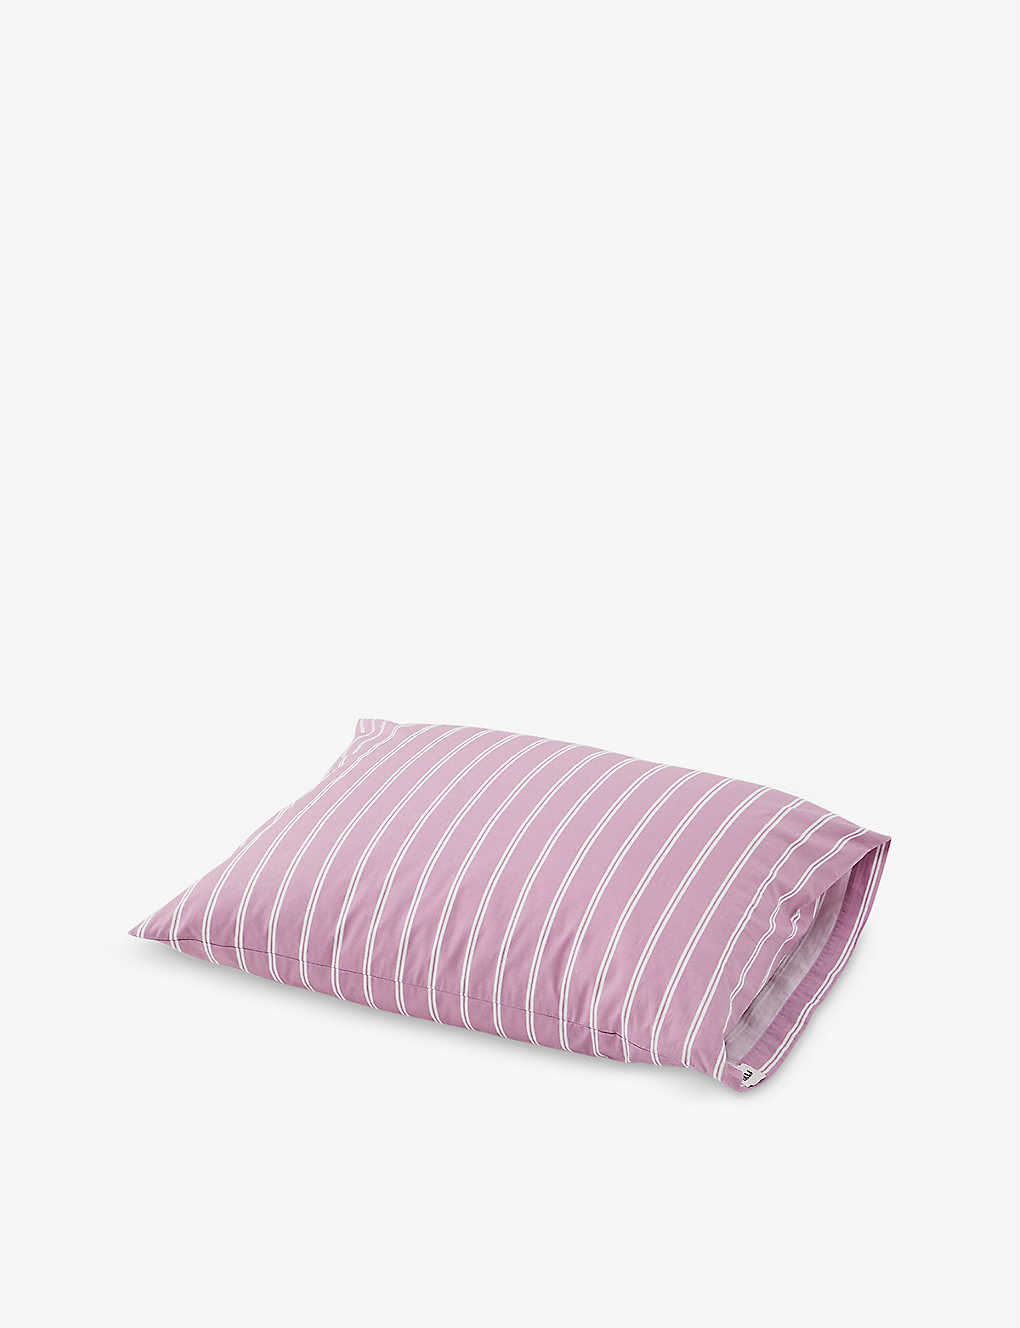 楽天Global HomesTEKLA ストライプ オーガニックコットン 枕カバー 50cm x 70-90cm Stripe organic-cotton pillowcase 50cm x 70-90cmPINK